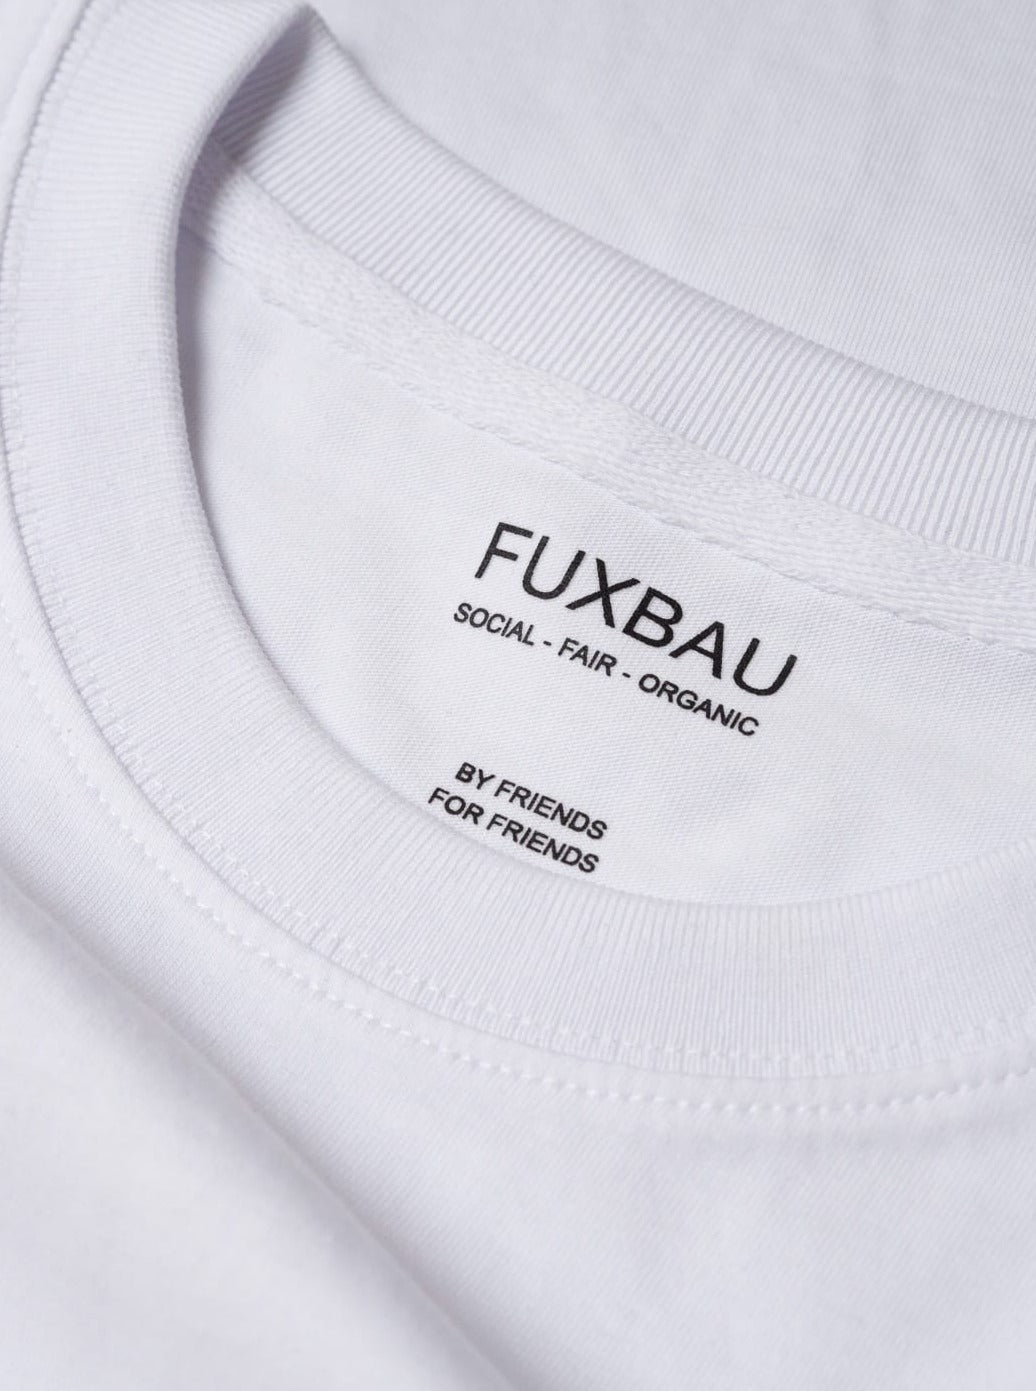 Detailbild eines nachhaltiges FUXBAU Basic T-Shirt in weiß mit einem schwarzen Imprint. Gefertigt aus 100% GOTS zertifizierter Biobaumwolle.